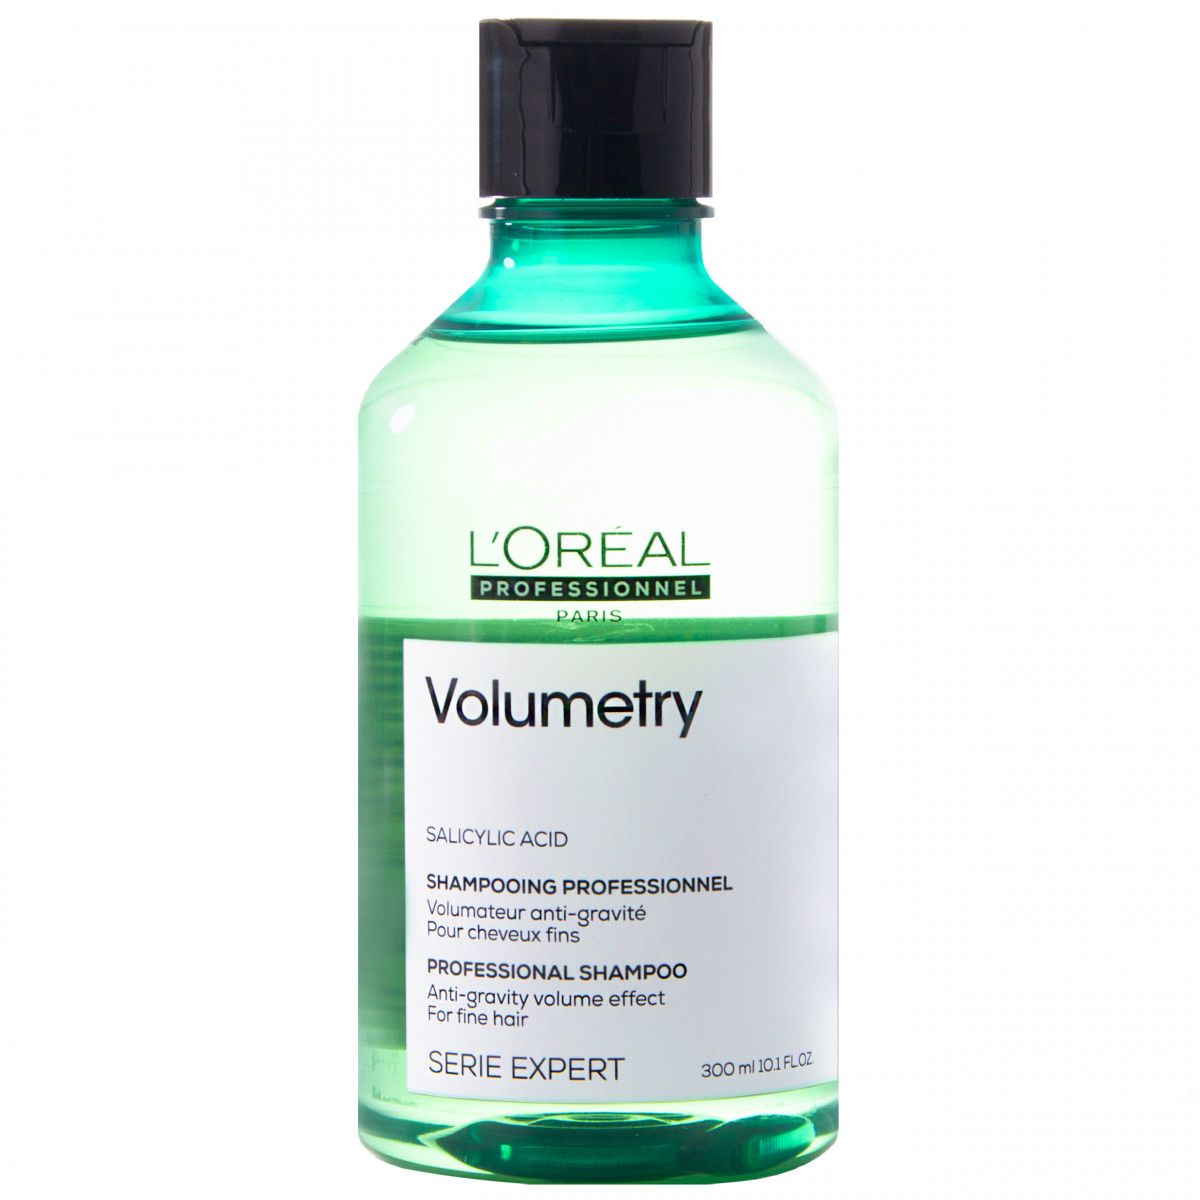 szampon volumetry loreal opinie